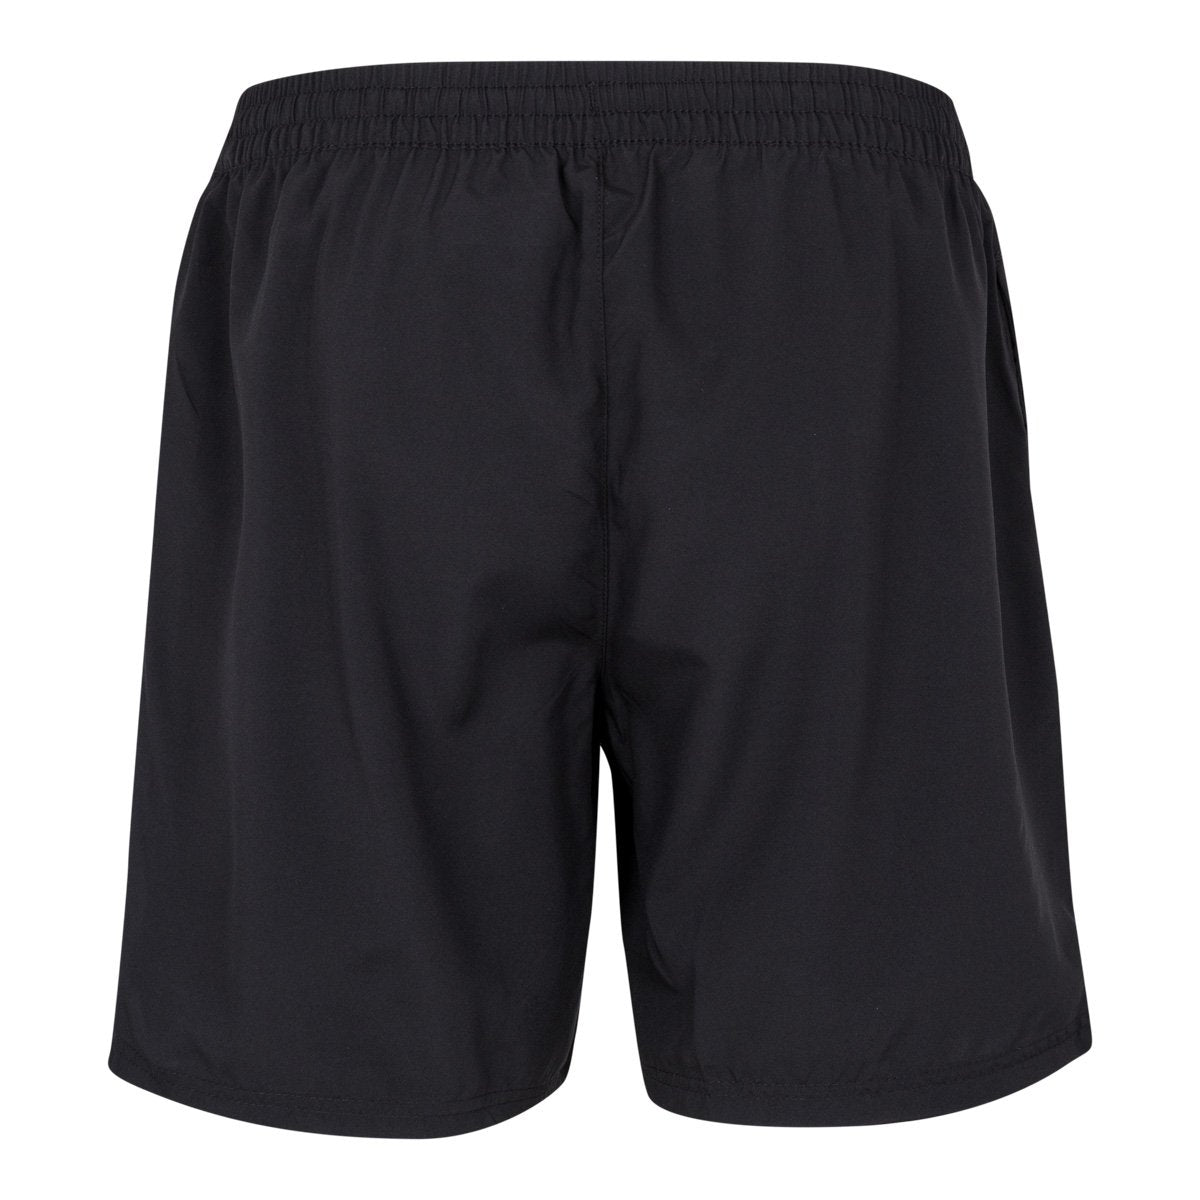 Pantalones cortes Tenis Lambre Negro Hombre - Imagen 2